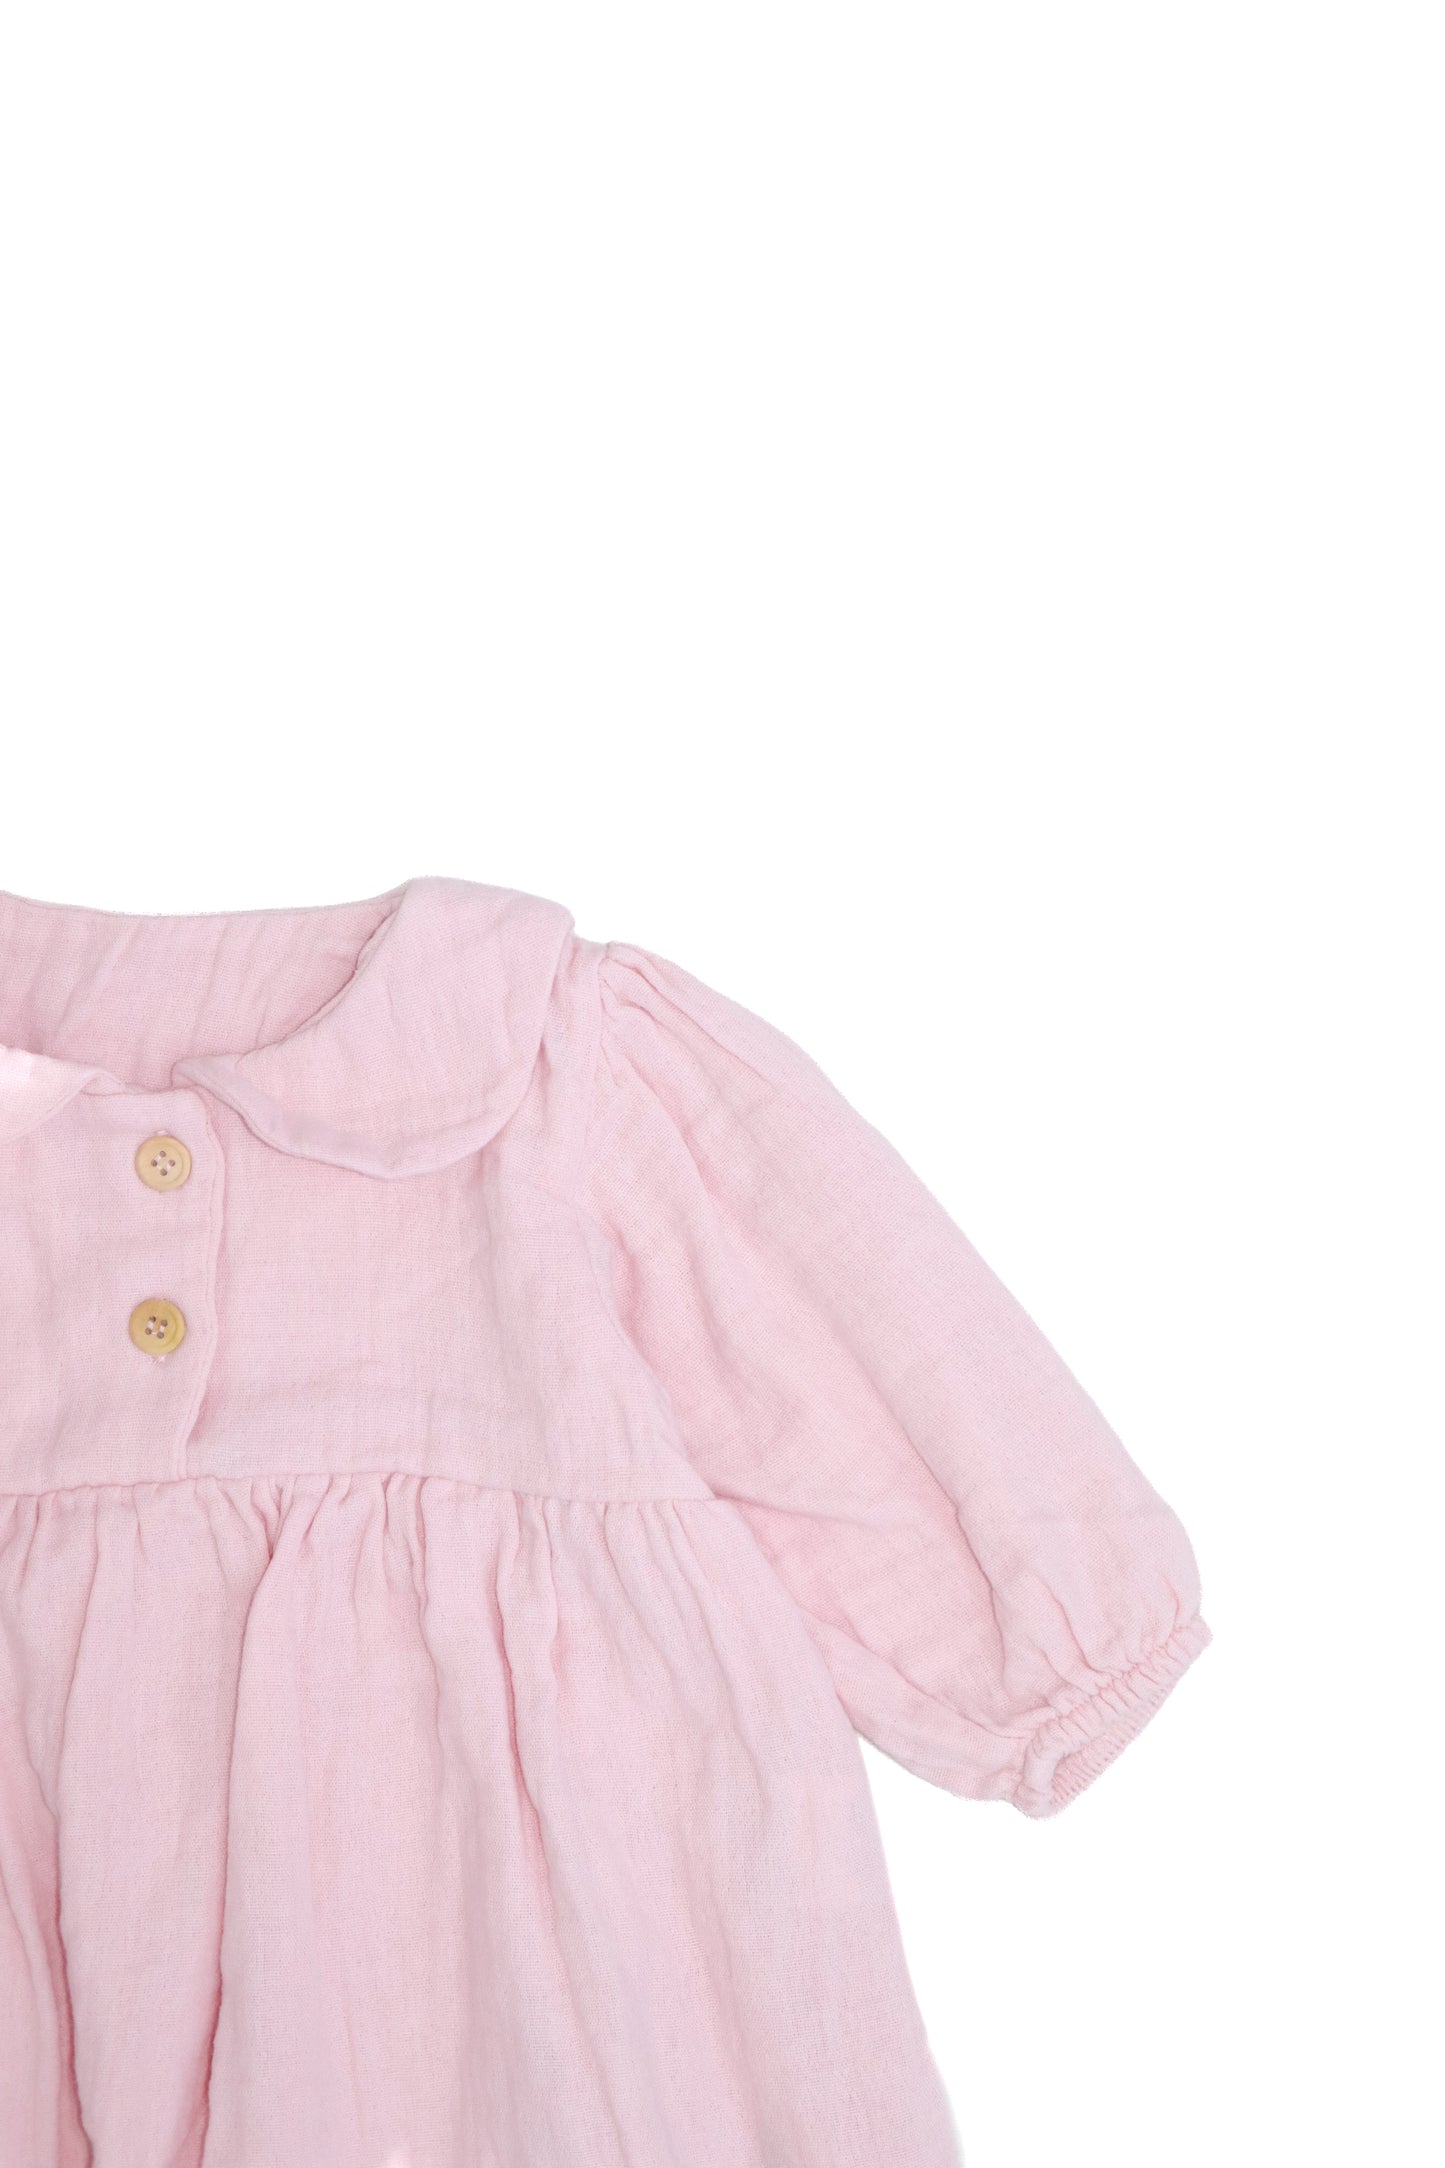 Детское платье с воротником из 100% муслина Baby